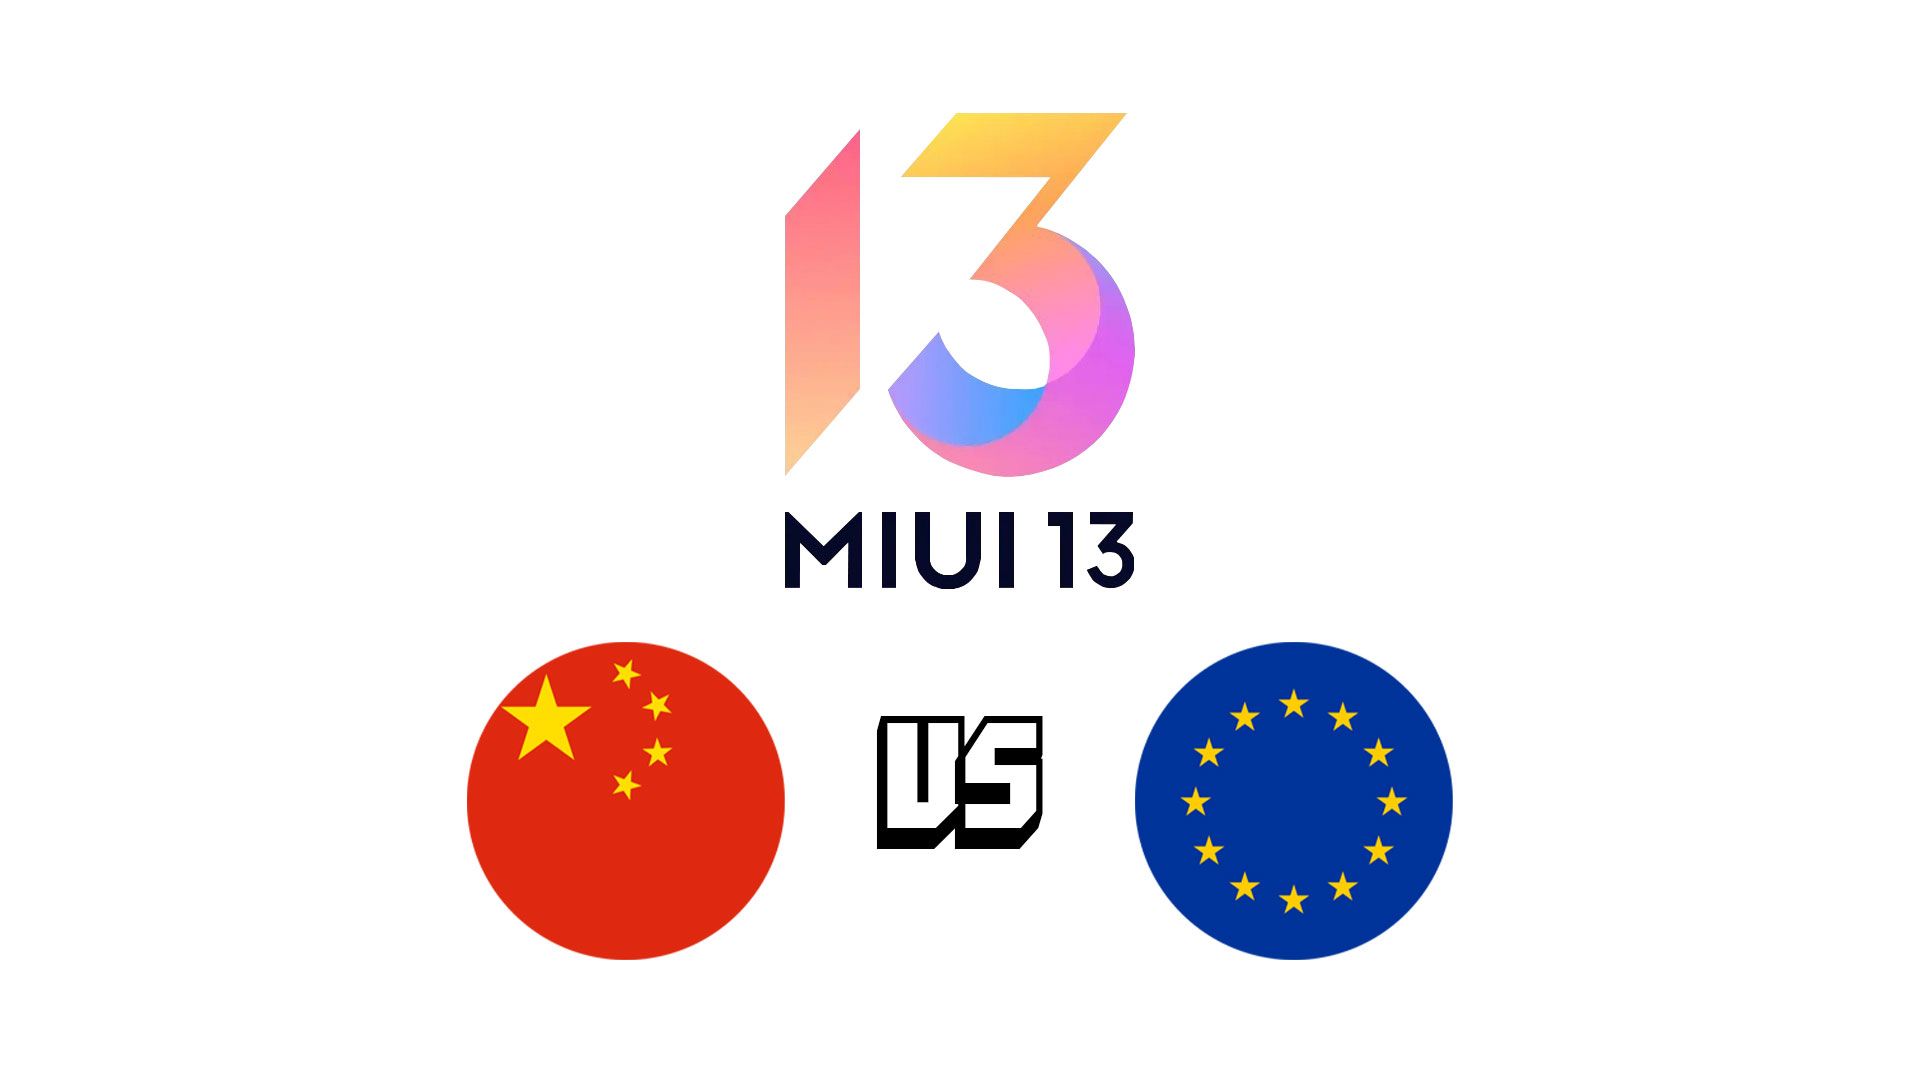 Xiaomi global ru. Xiaomi 13 China vs Global. Xiaomi 13 China vs Global упаковка.